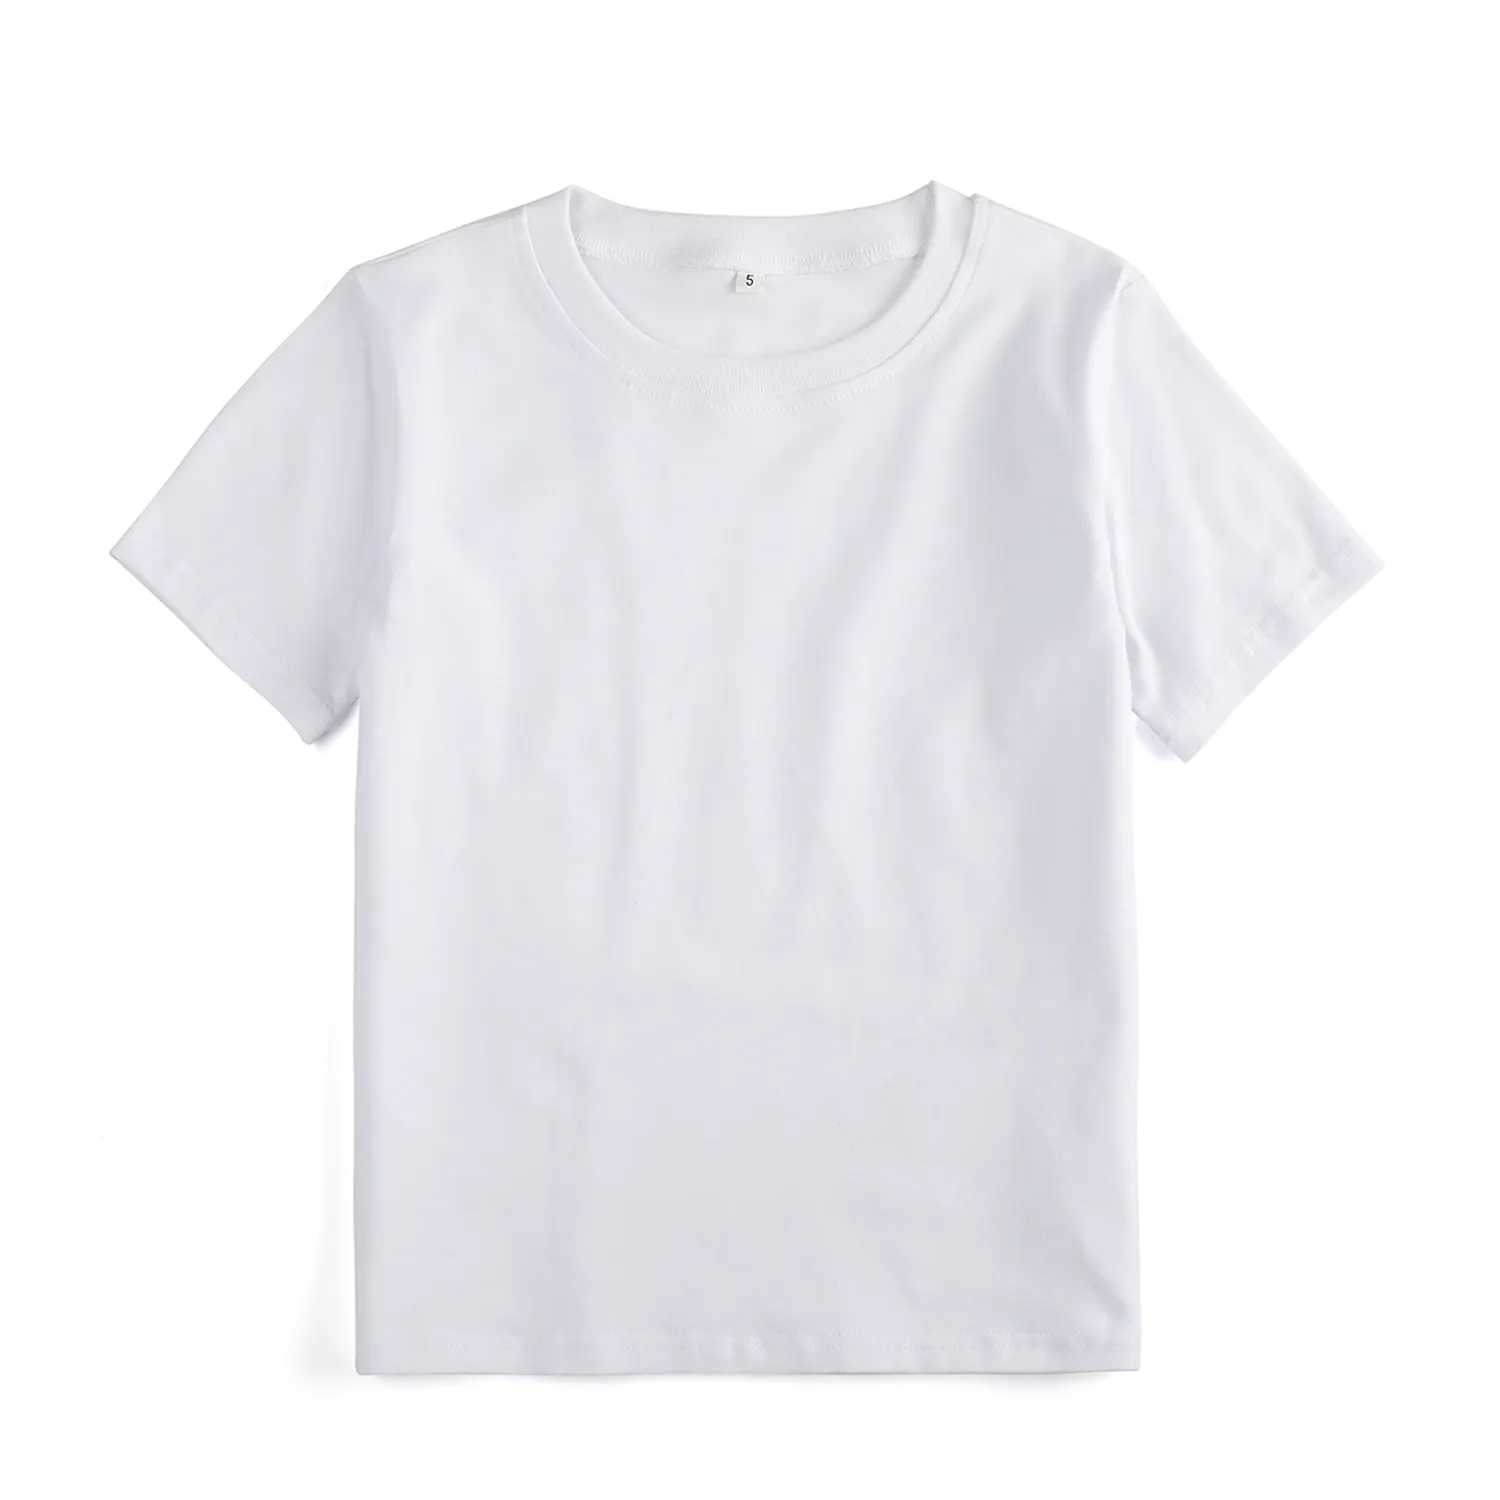 Camiseta blanca de algodón suave para niños, camisetas de diseño Simple para niños pequeños, ropa al por mayor